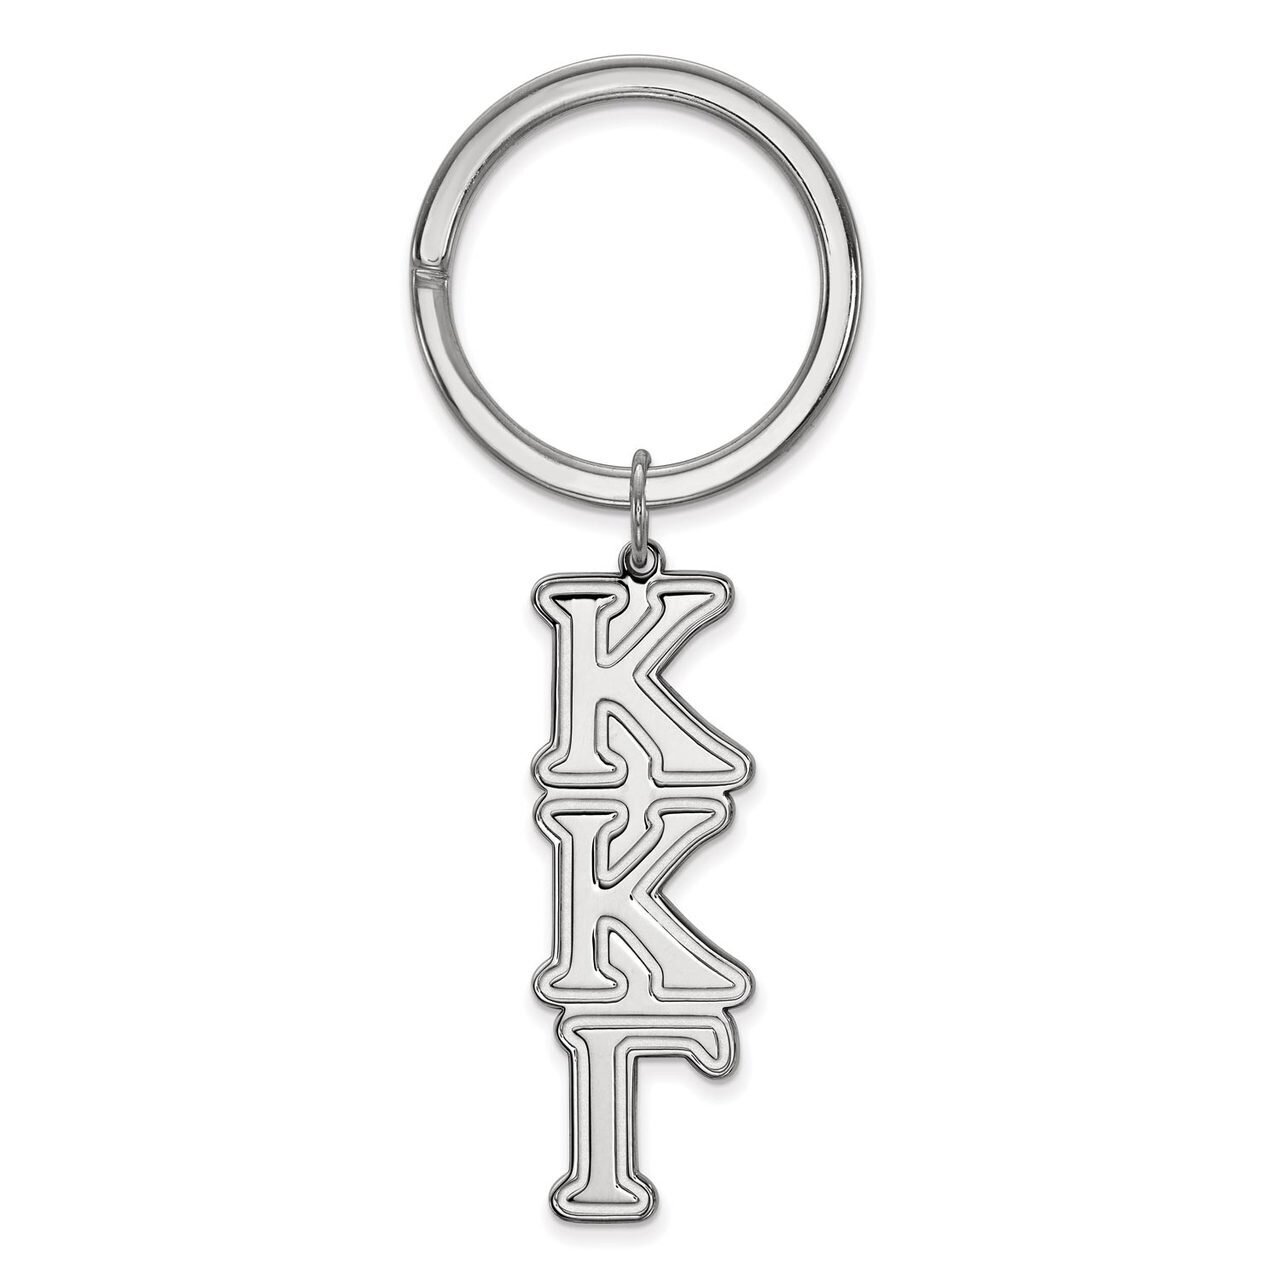 Kappa Kappa Gamma Key Chain Sterling Silver SS010KKG